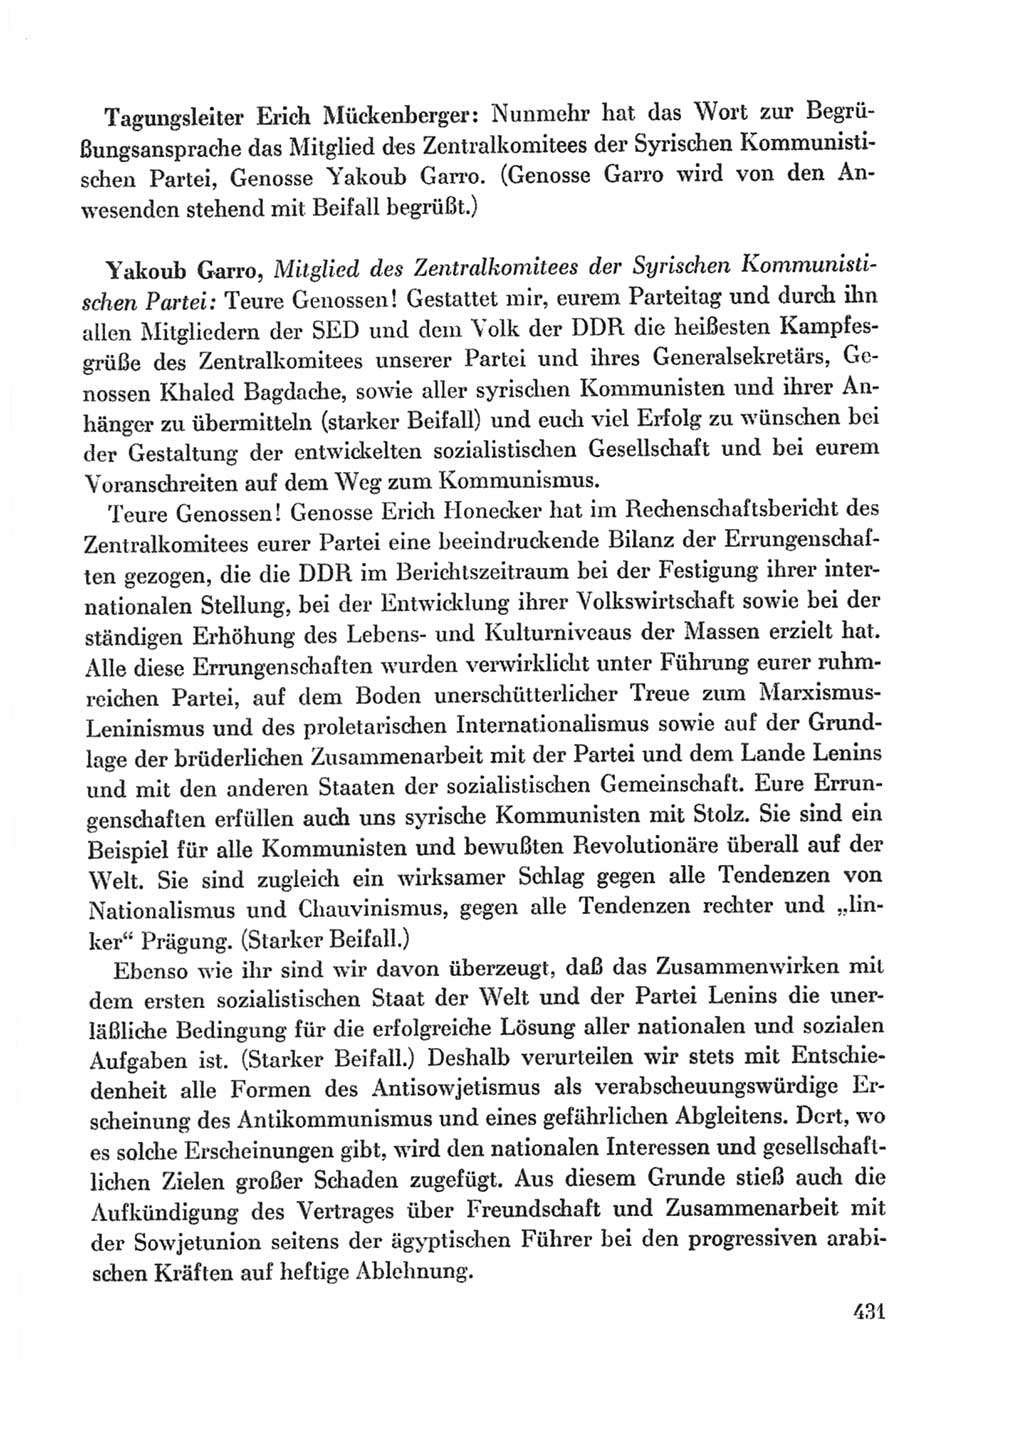 Protokoll der Verhandlungen des Ⅸ. Parteitages der Sozialistischen Einheitspartei Deutschlands (SED) [Deutsche Demokratische Republik (DDR)] 1976, Band 1, Seite 431 (Prot. Verh. Ⅸ. PT SED DDR 1976, Bd. 1, S. 431)